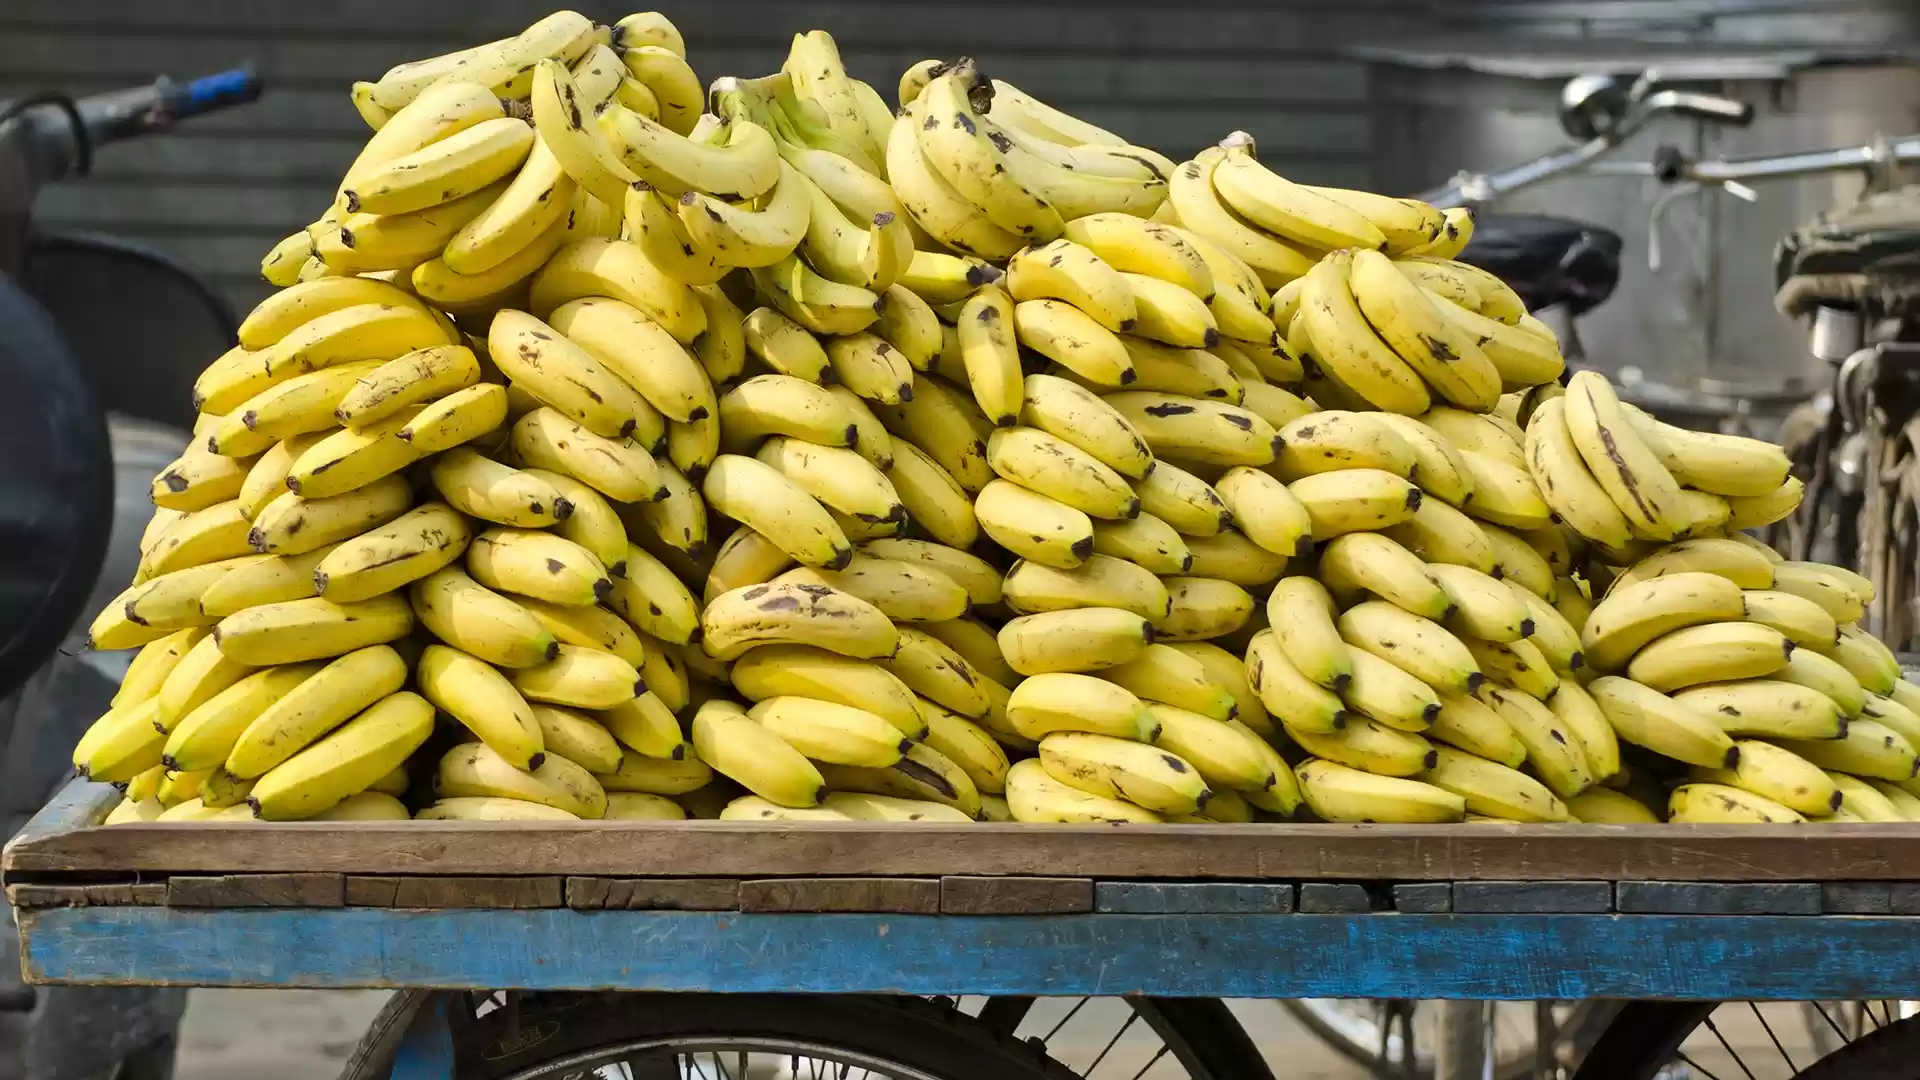 حماية المستهلك: ارتفاع أسعار الموز بشكل جنوني